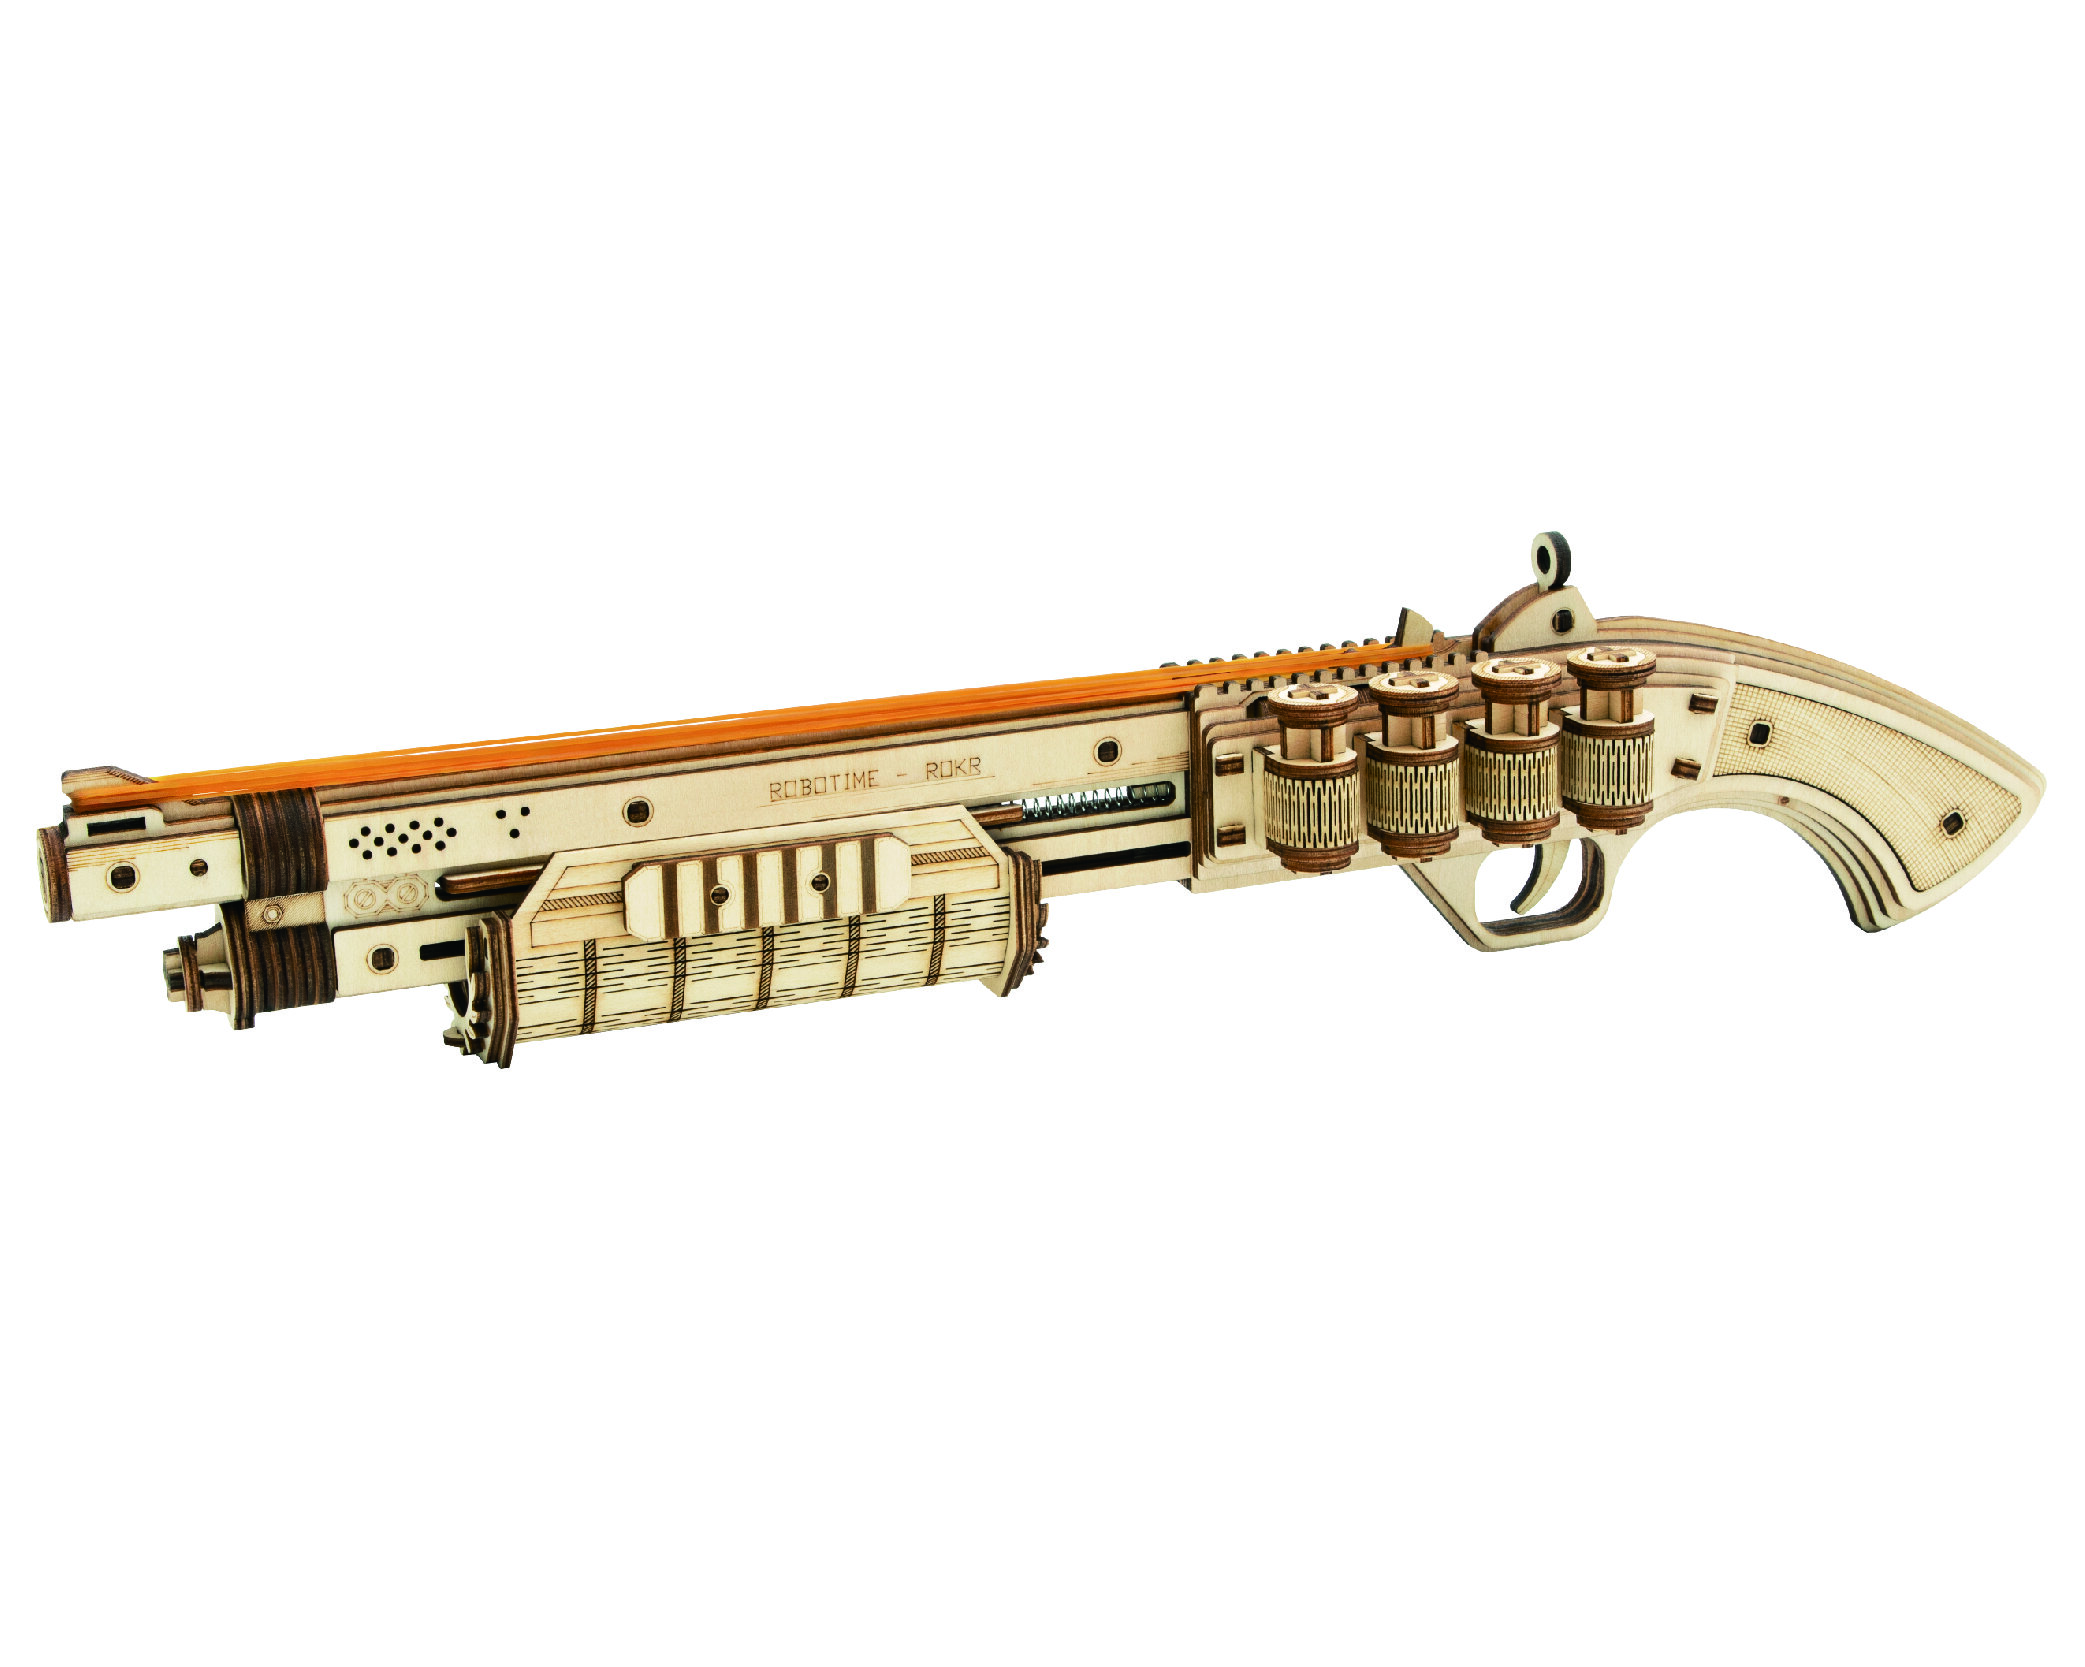 Rompecabezas 3D mecánico de madera - Terminator M870 ROKR LQ501